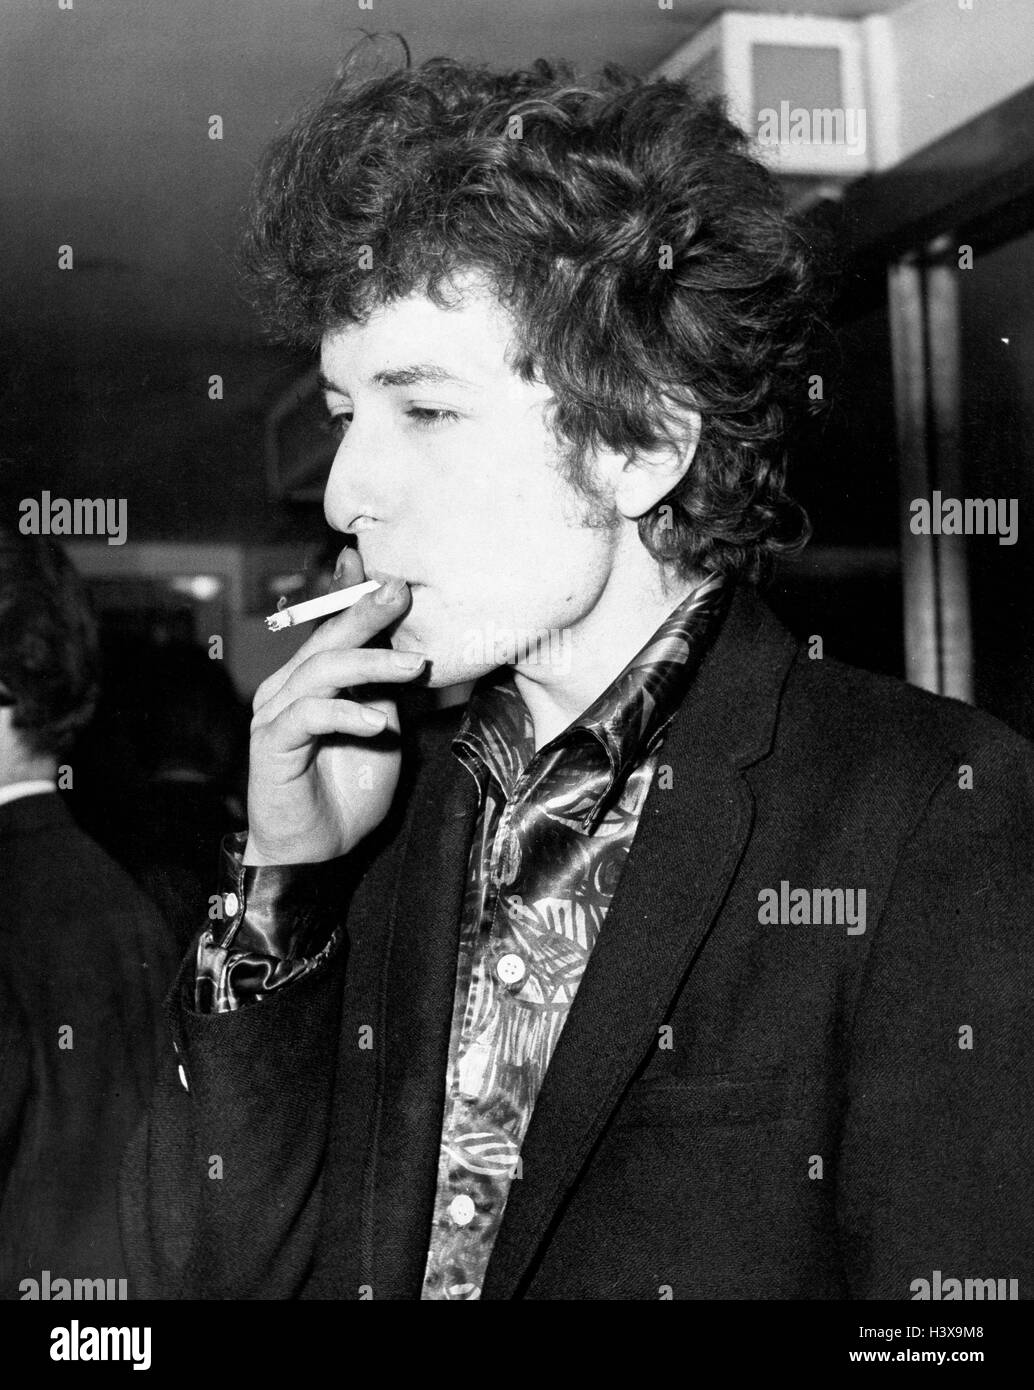 Londres, Reino Unido, REINO UNIDO 27 abr, 1965. Cantante Folk Bob Dylan fumar un cigarrillo. Dylan está en la ciudad por su tour británico en el Hotel Savoy. © KEYSTONE Pictures/ZUMAPRESS.com/Alamy Live News Foto de stock